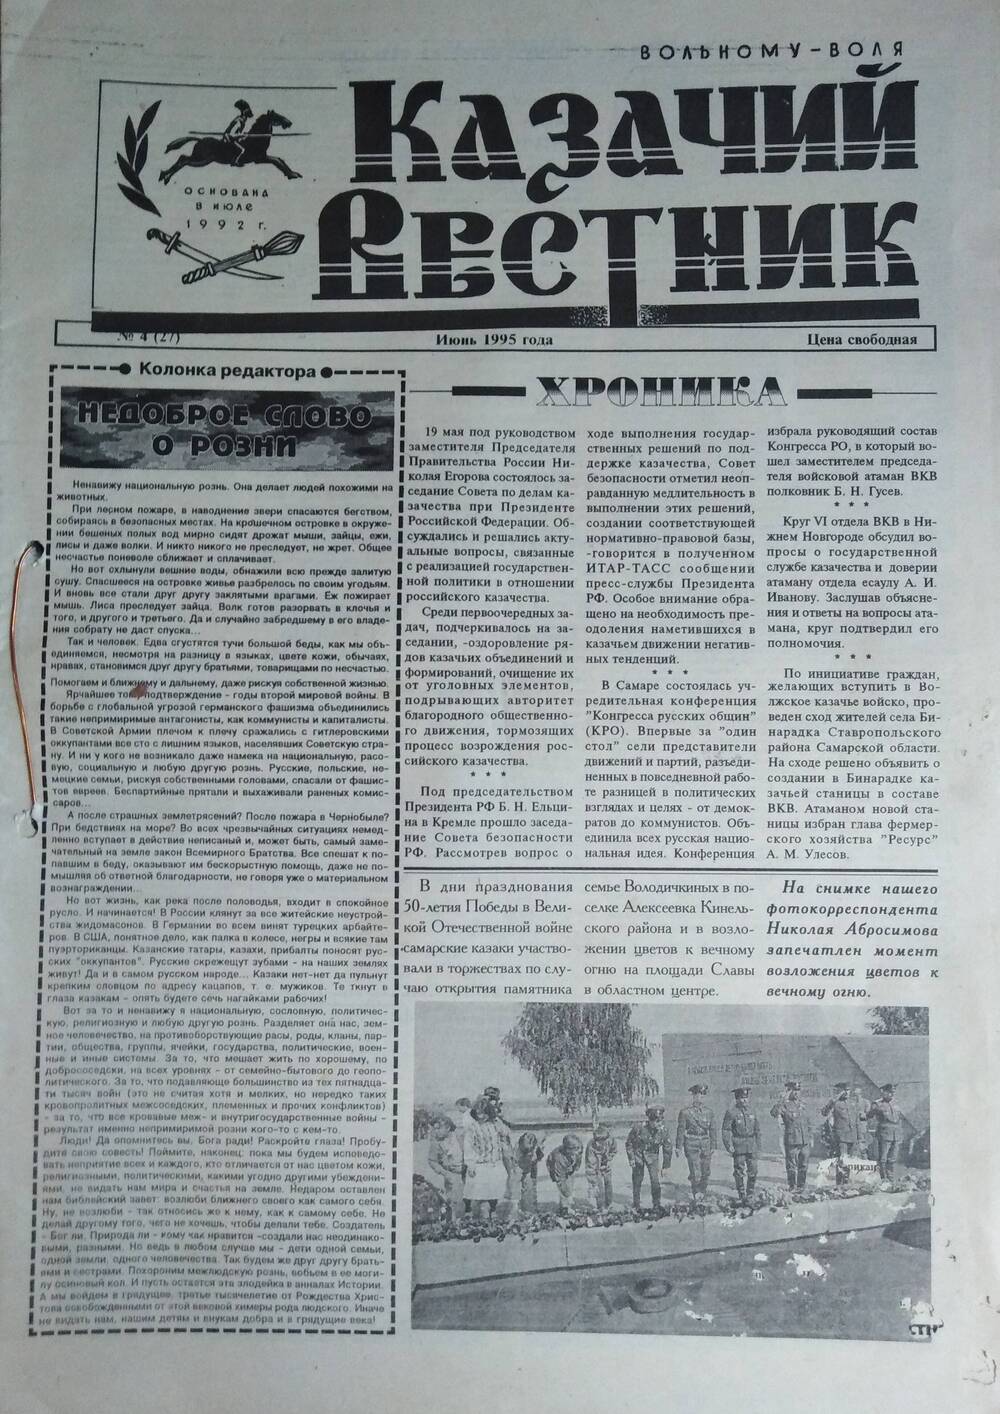 Подшивка газеты Казачий вестник, Праздников